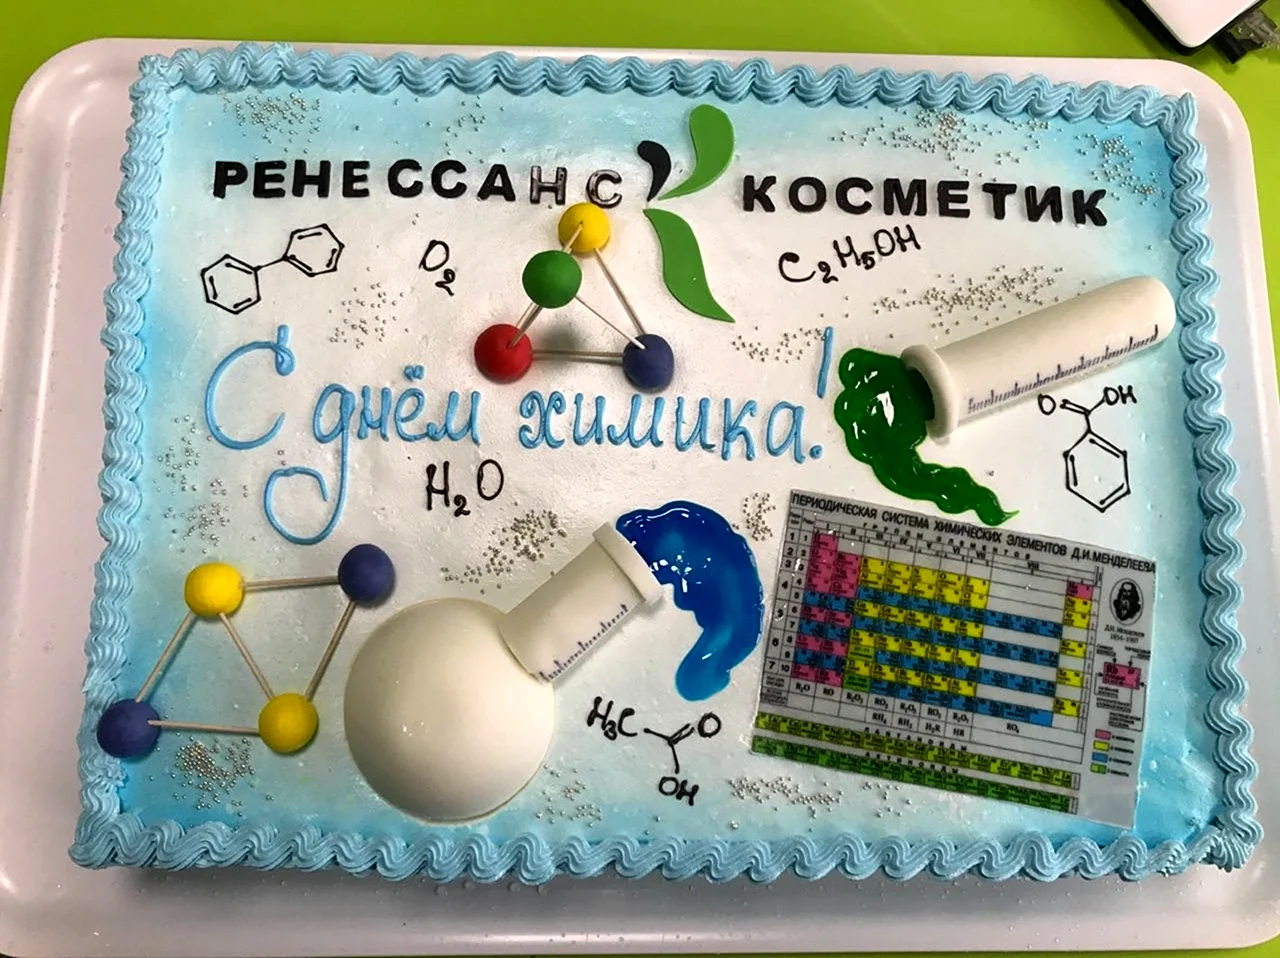 Поздравление с днем рождения химику. Красивая картинка